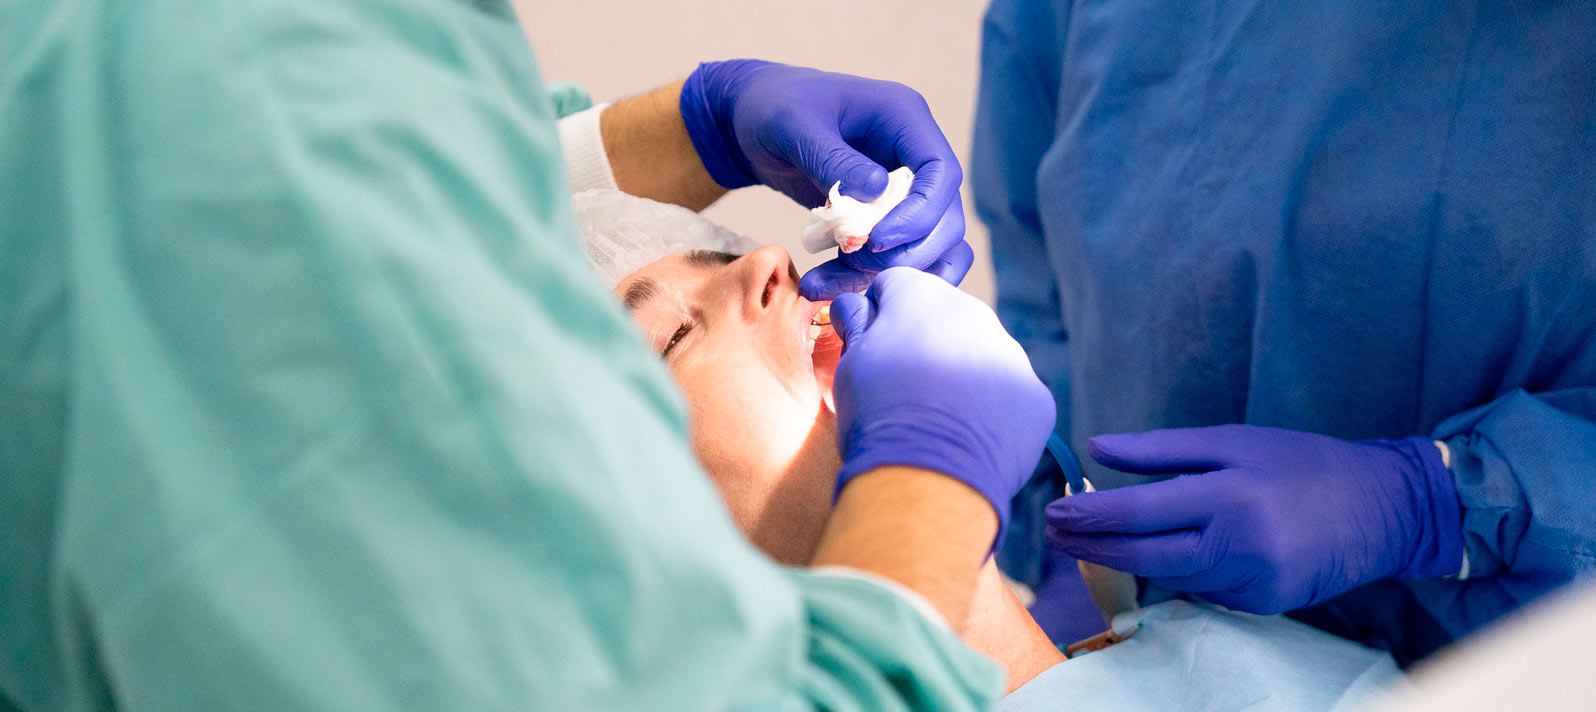 La piorrea o periodontitis es el estado más grave al que puede llegar una infección de encías